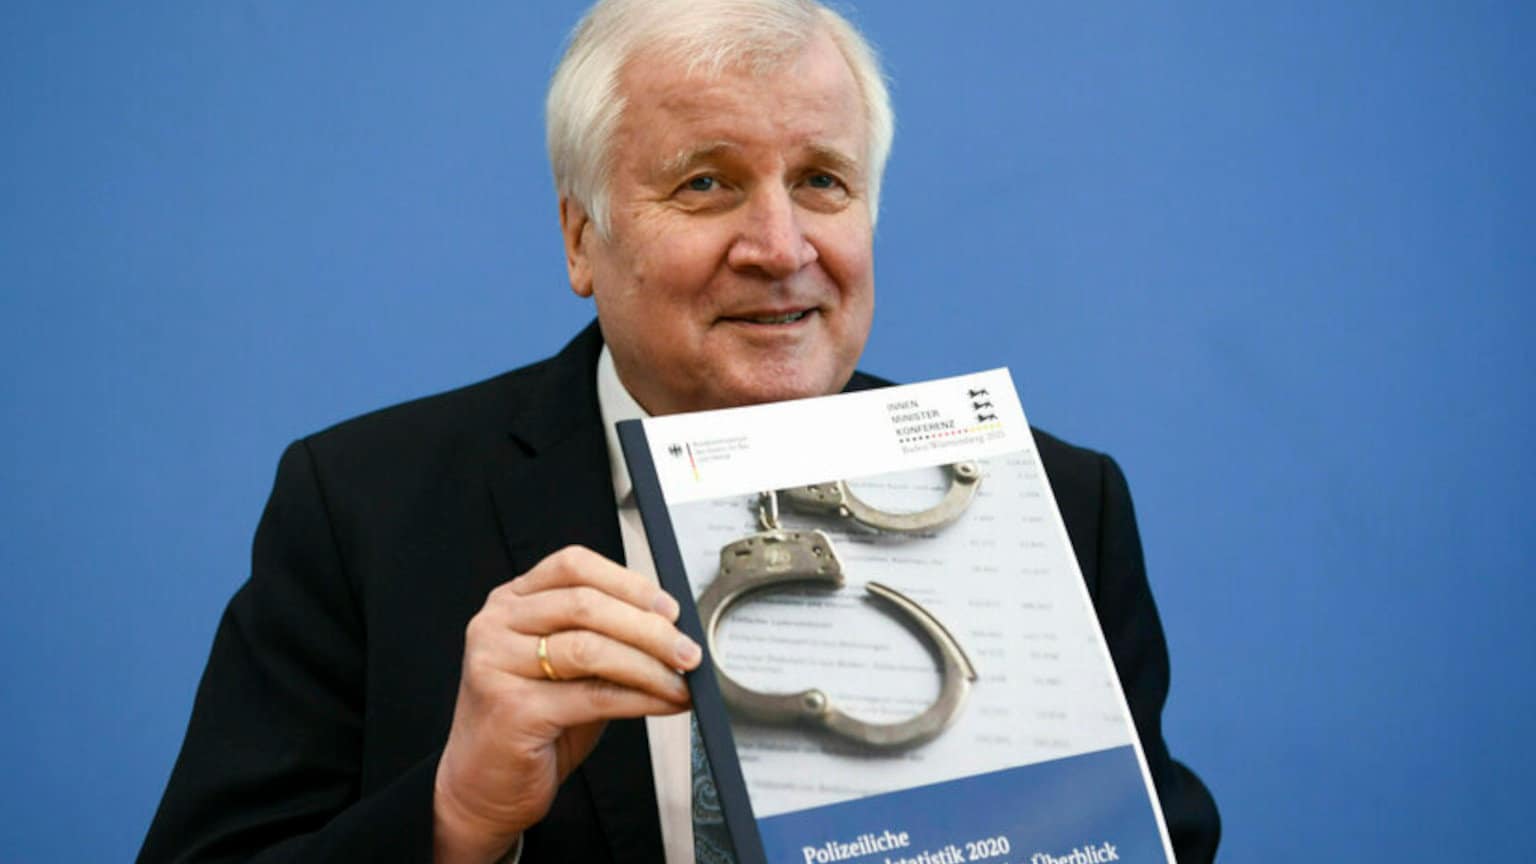 BKA-Statistik: Merkel-Regime fälscht systematisch Zahlen zu "rechten Straftaten"